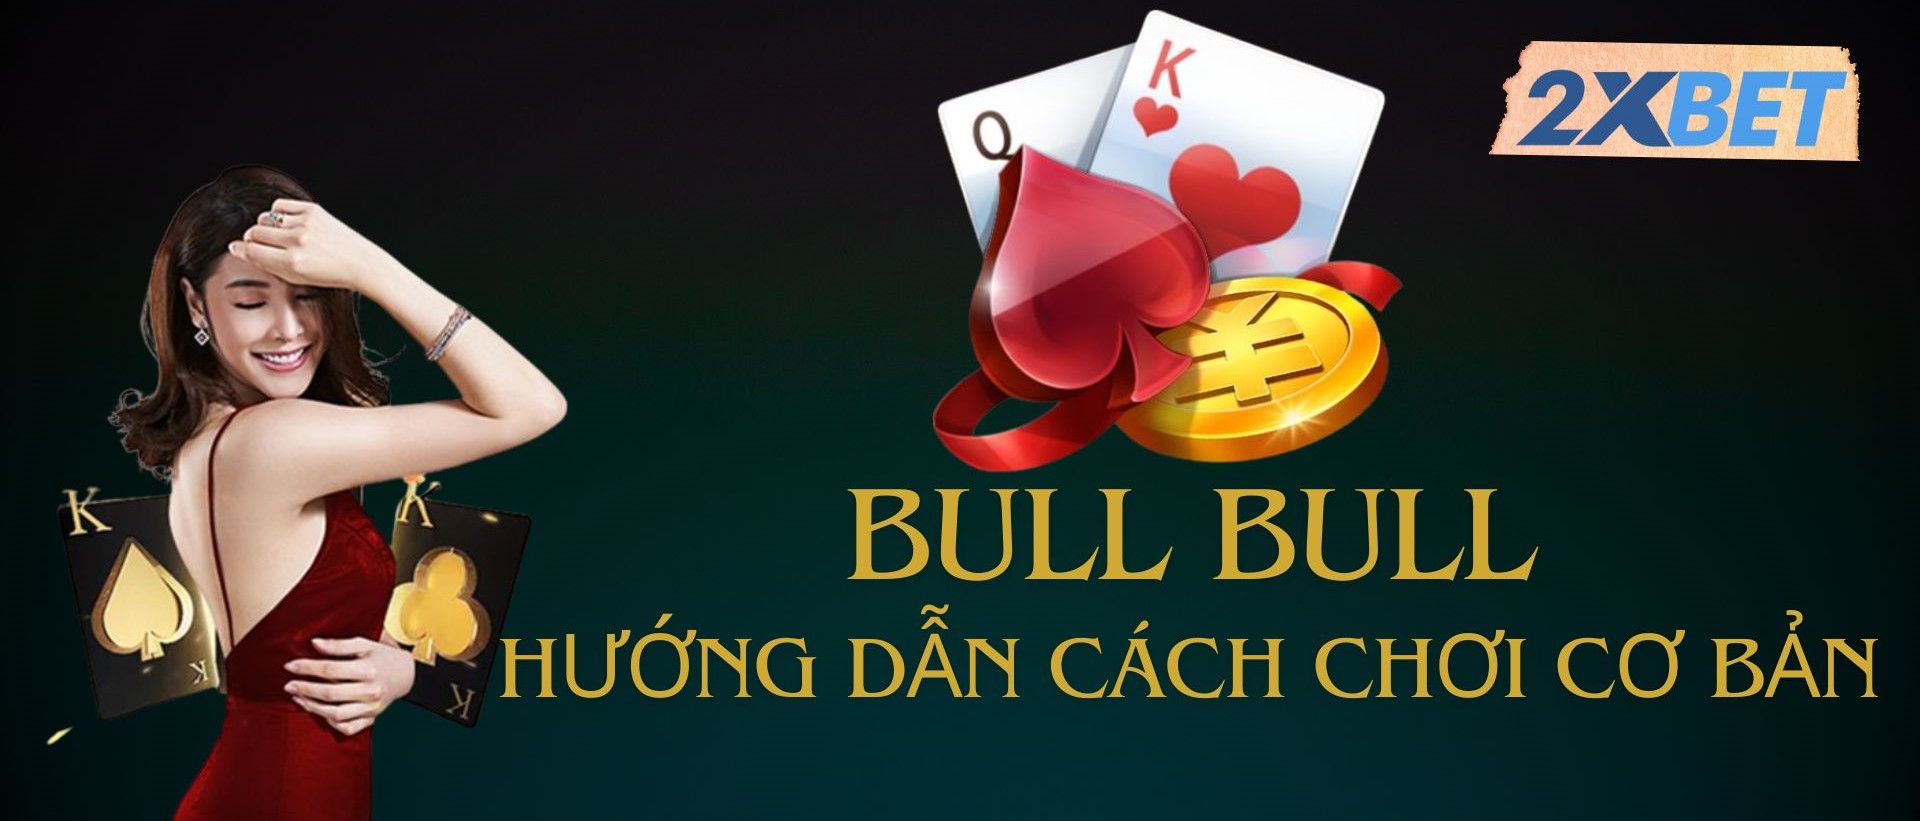 Game bài Bull Bull tại nhà cái 2XBET